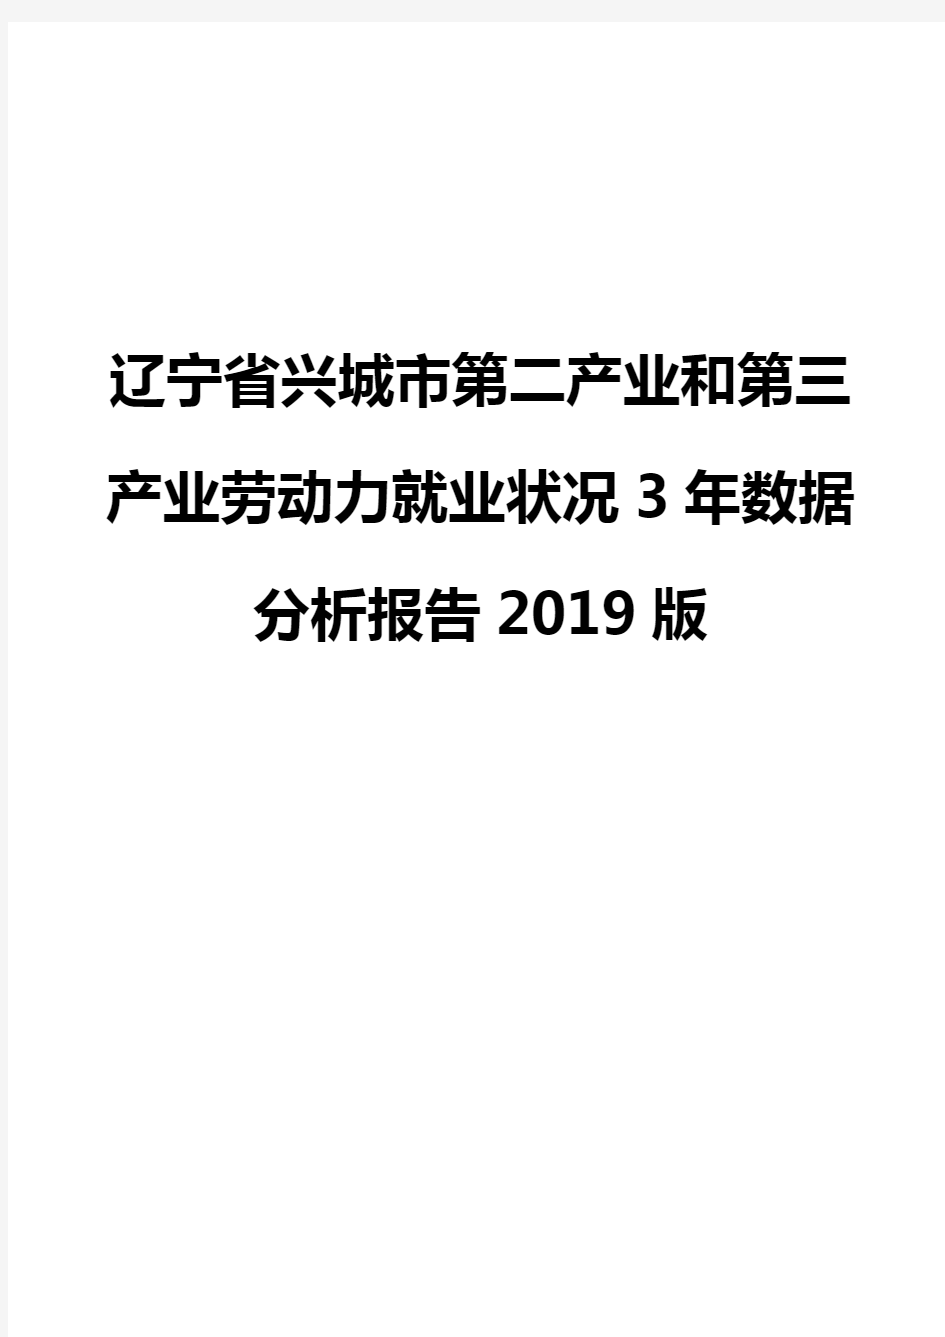 辽宁省兴城市第二产业和第三产业劳动力就业状况3年数据分析报告2019版